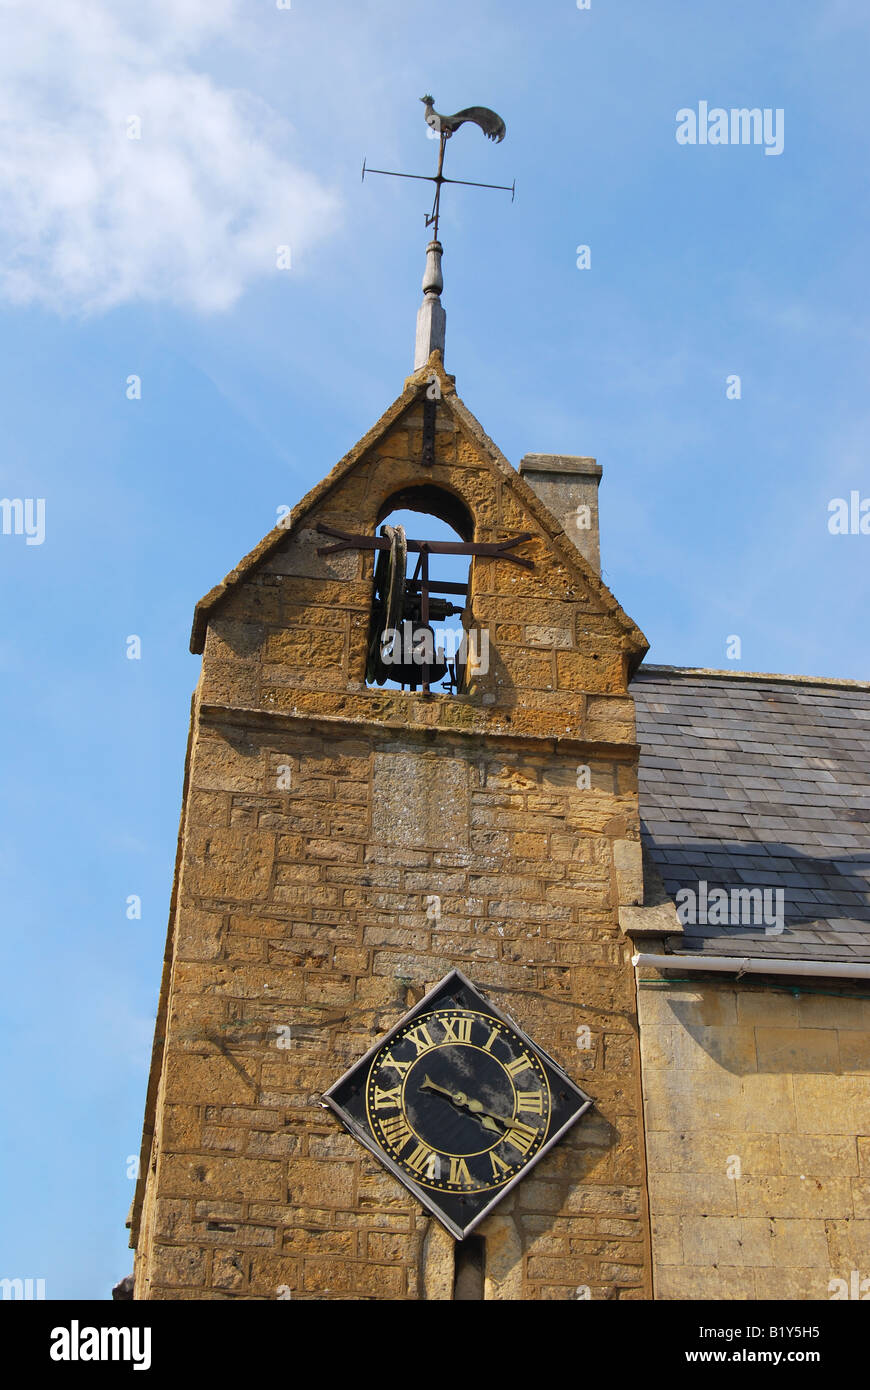 16e siècle la tour de couvre-feu, High Street, Moreton-in-Marsh, Gloucestershire, Angleterre, Royaume-Uni Banque D'Images